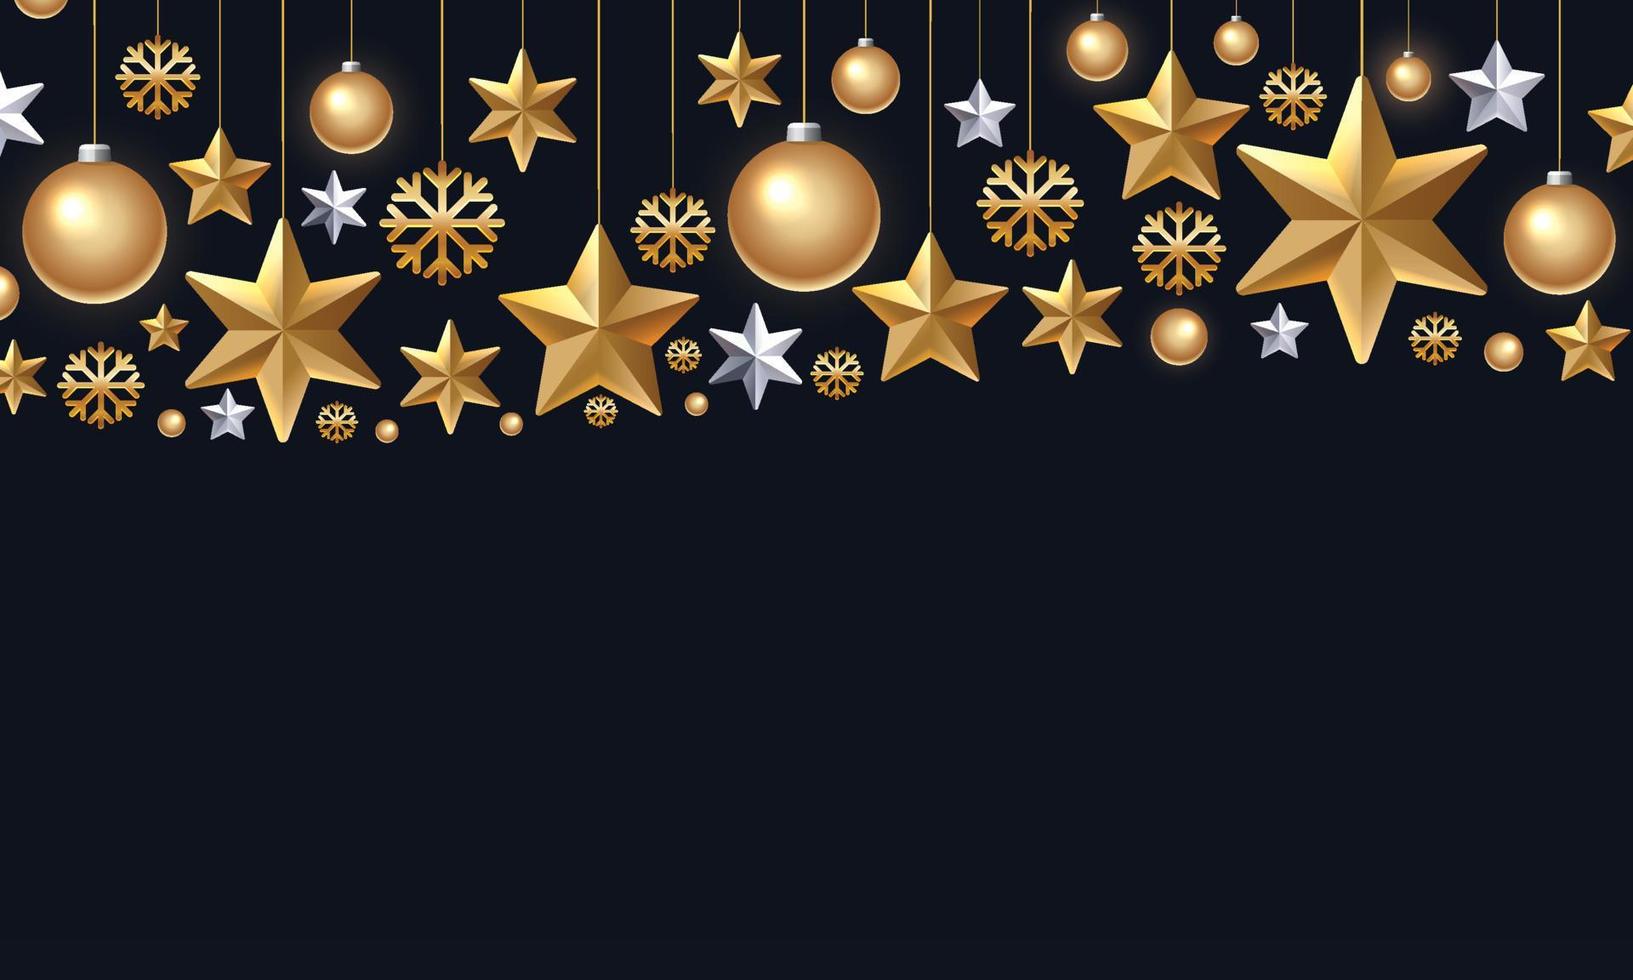 skimrande gyllene snöflingor, julbollar och stjärnor på svart bakgrund. vektor 3d illustration av glödande hängande julprydnad. nyår omslag eller banner mall. vintersemesterdekoration.